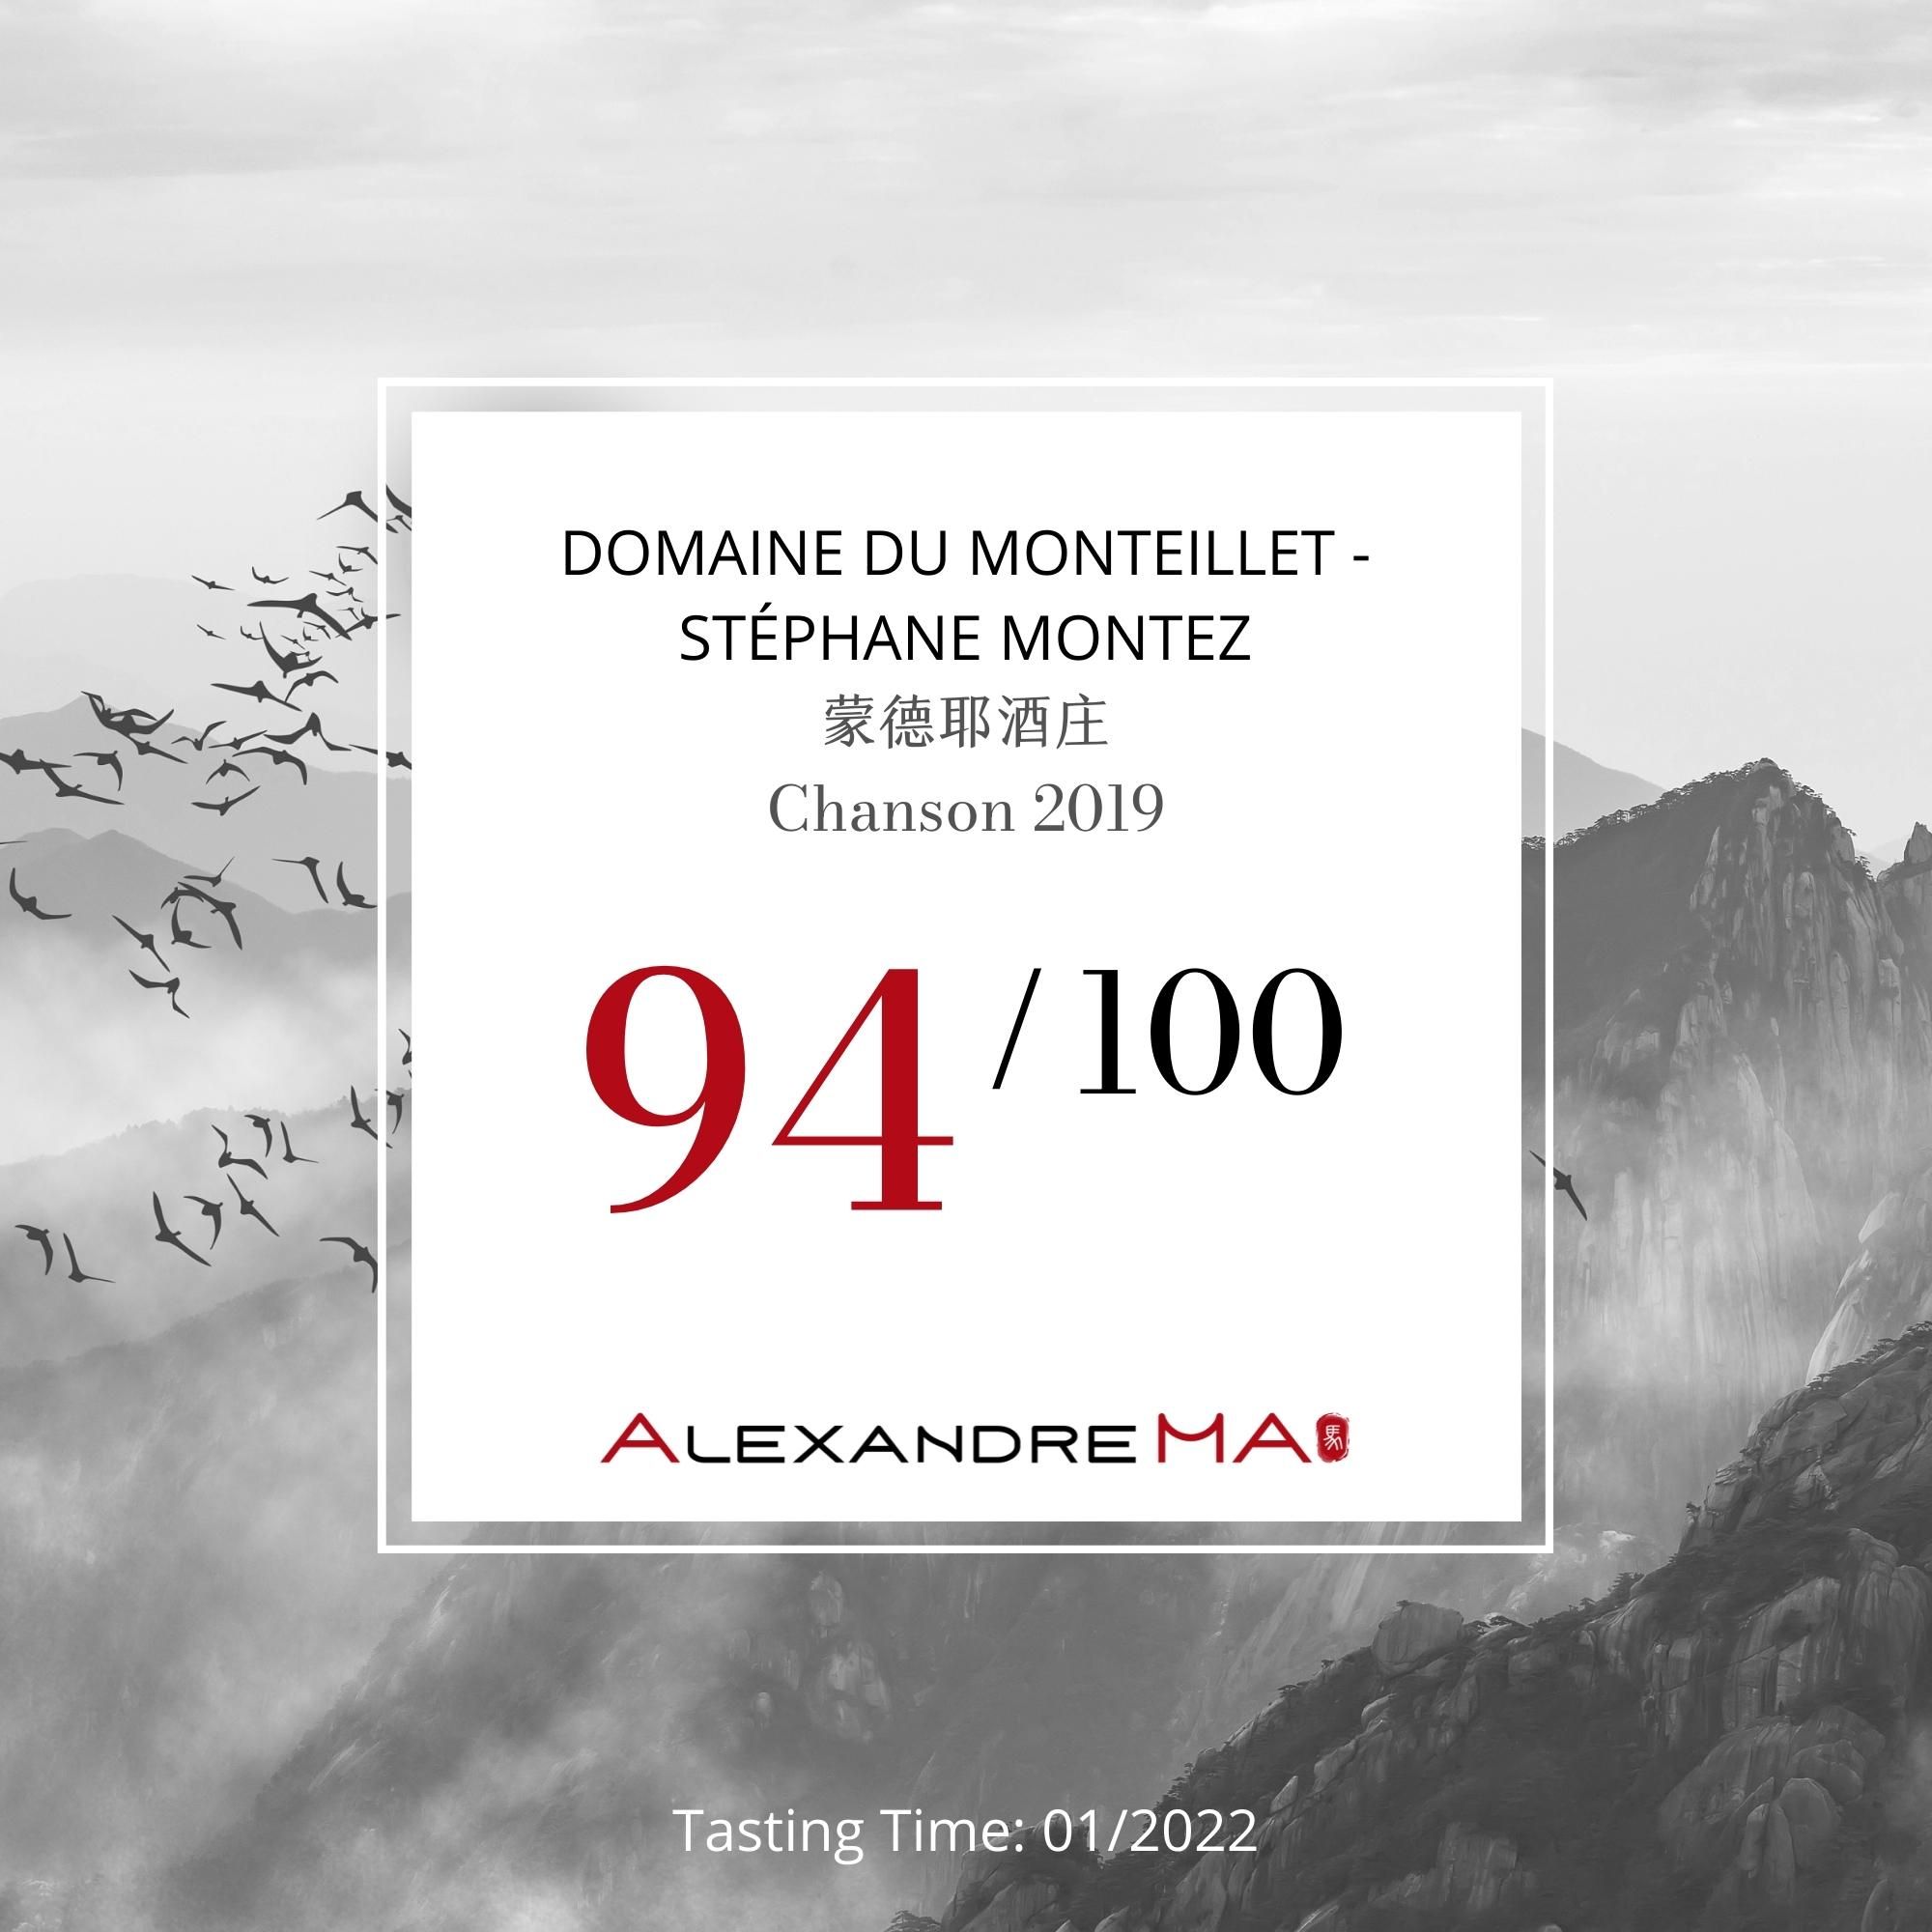 Domaine du Monteillet – Stéphane Montez-Chanson 2019 - Alexandre MA